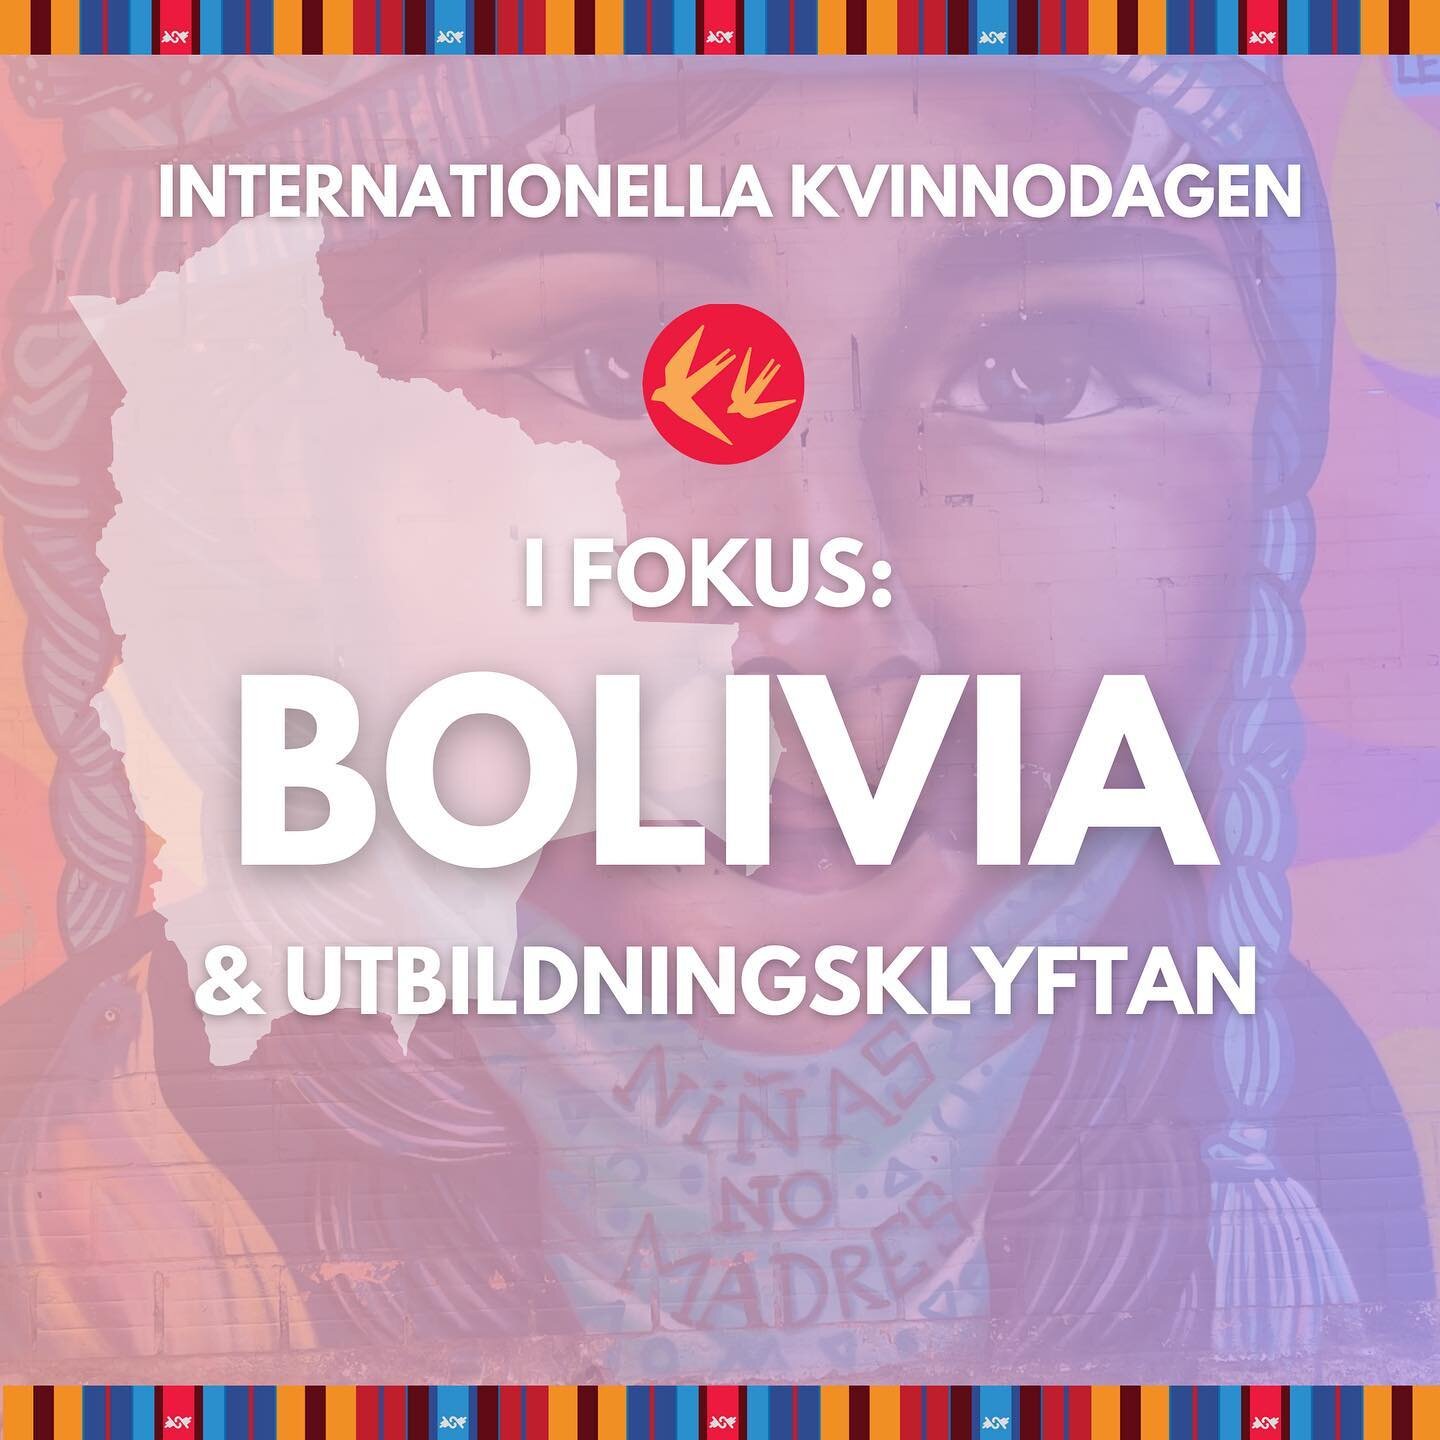 F&Ouml;RDR&Ouml;JDA DR&Ouml;MMAR - KONSEKVENSERNA AV OJ&Auml;MLIKHET I UTBILDNING F&Ouml;R BOLIVANSKA KVINNOR

Idag, p&aring; internationella kvinnodagen, vill Svalorna Latinamerika uppm&auml;rksamma utbildningsklyftan i Bolivia.&nbsp;

Kvinnor och f